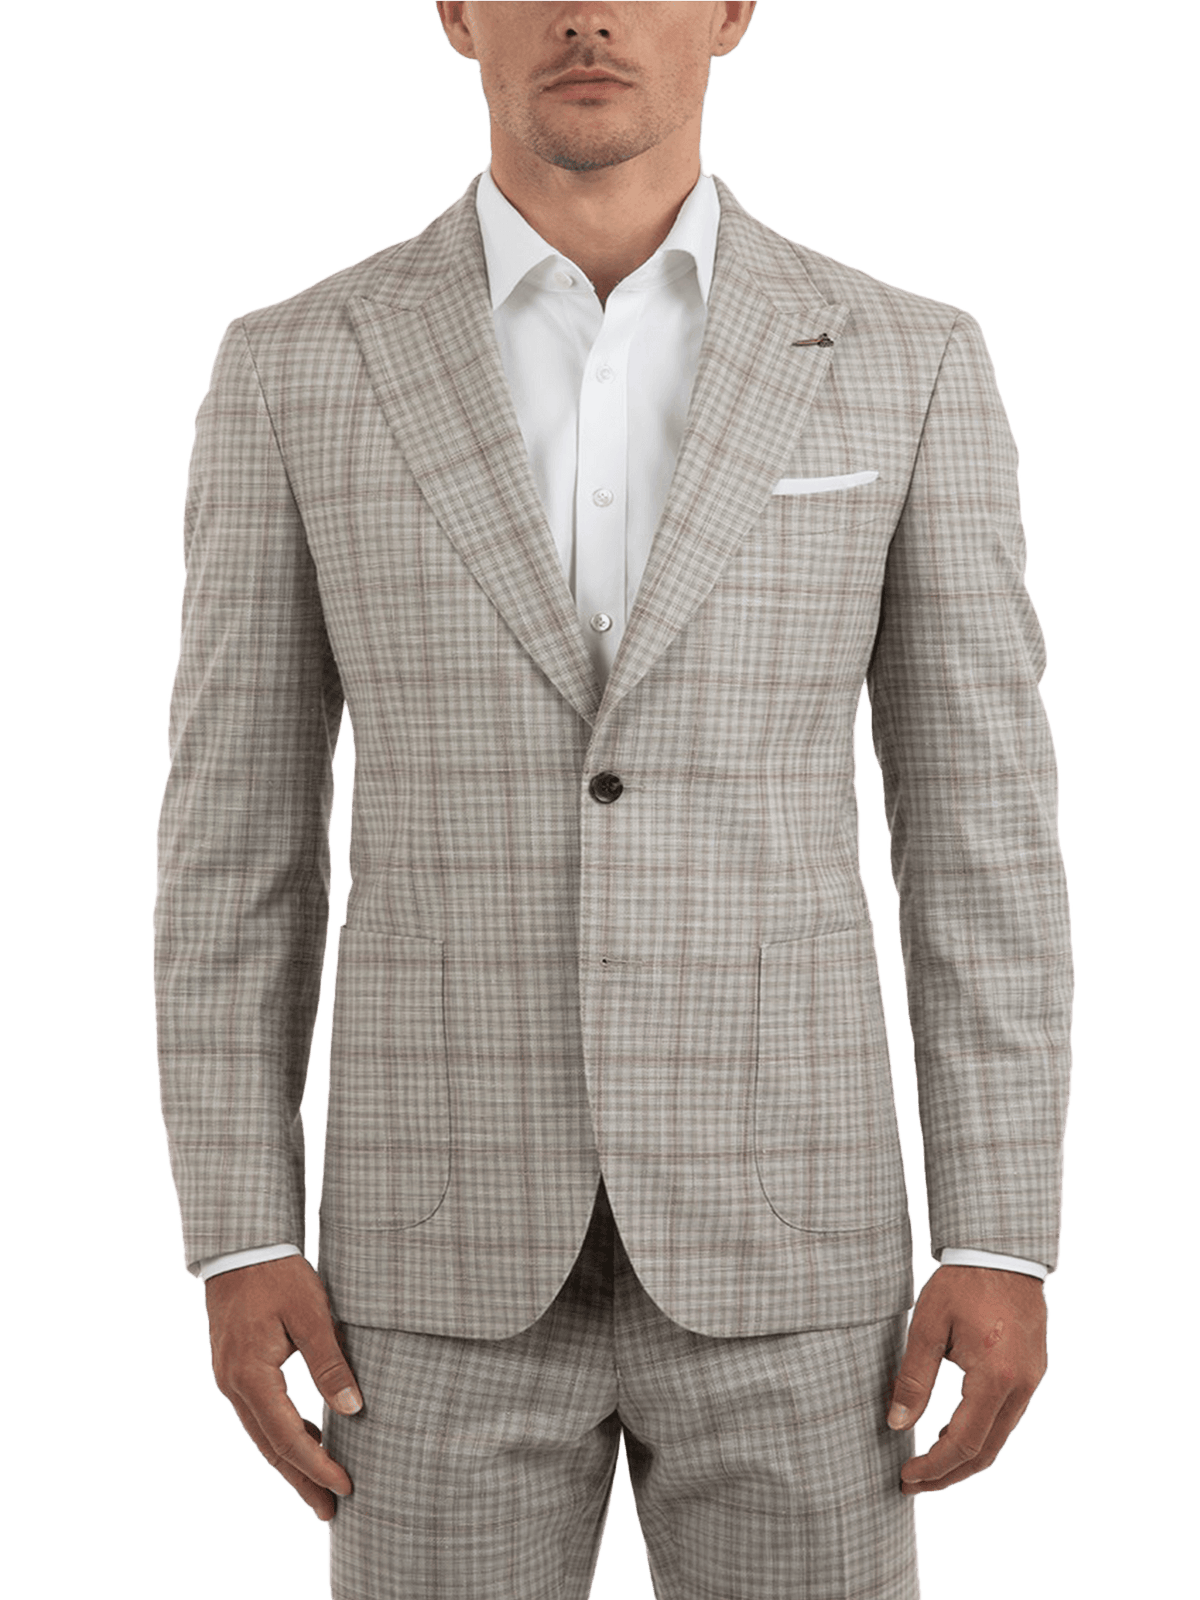 Lascar Jacket - Harrys for Menswear